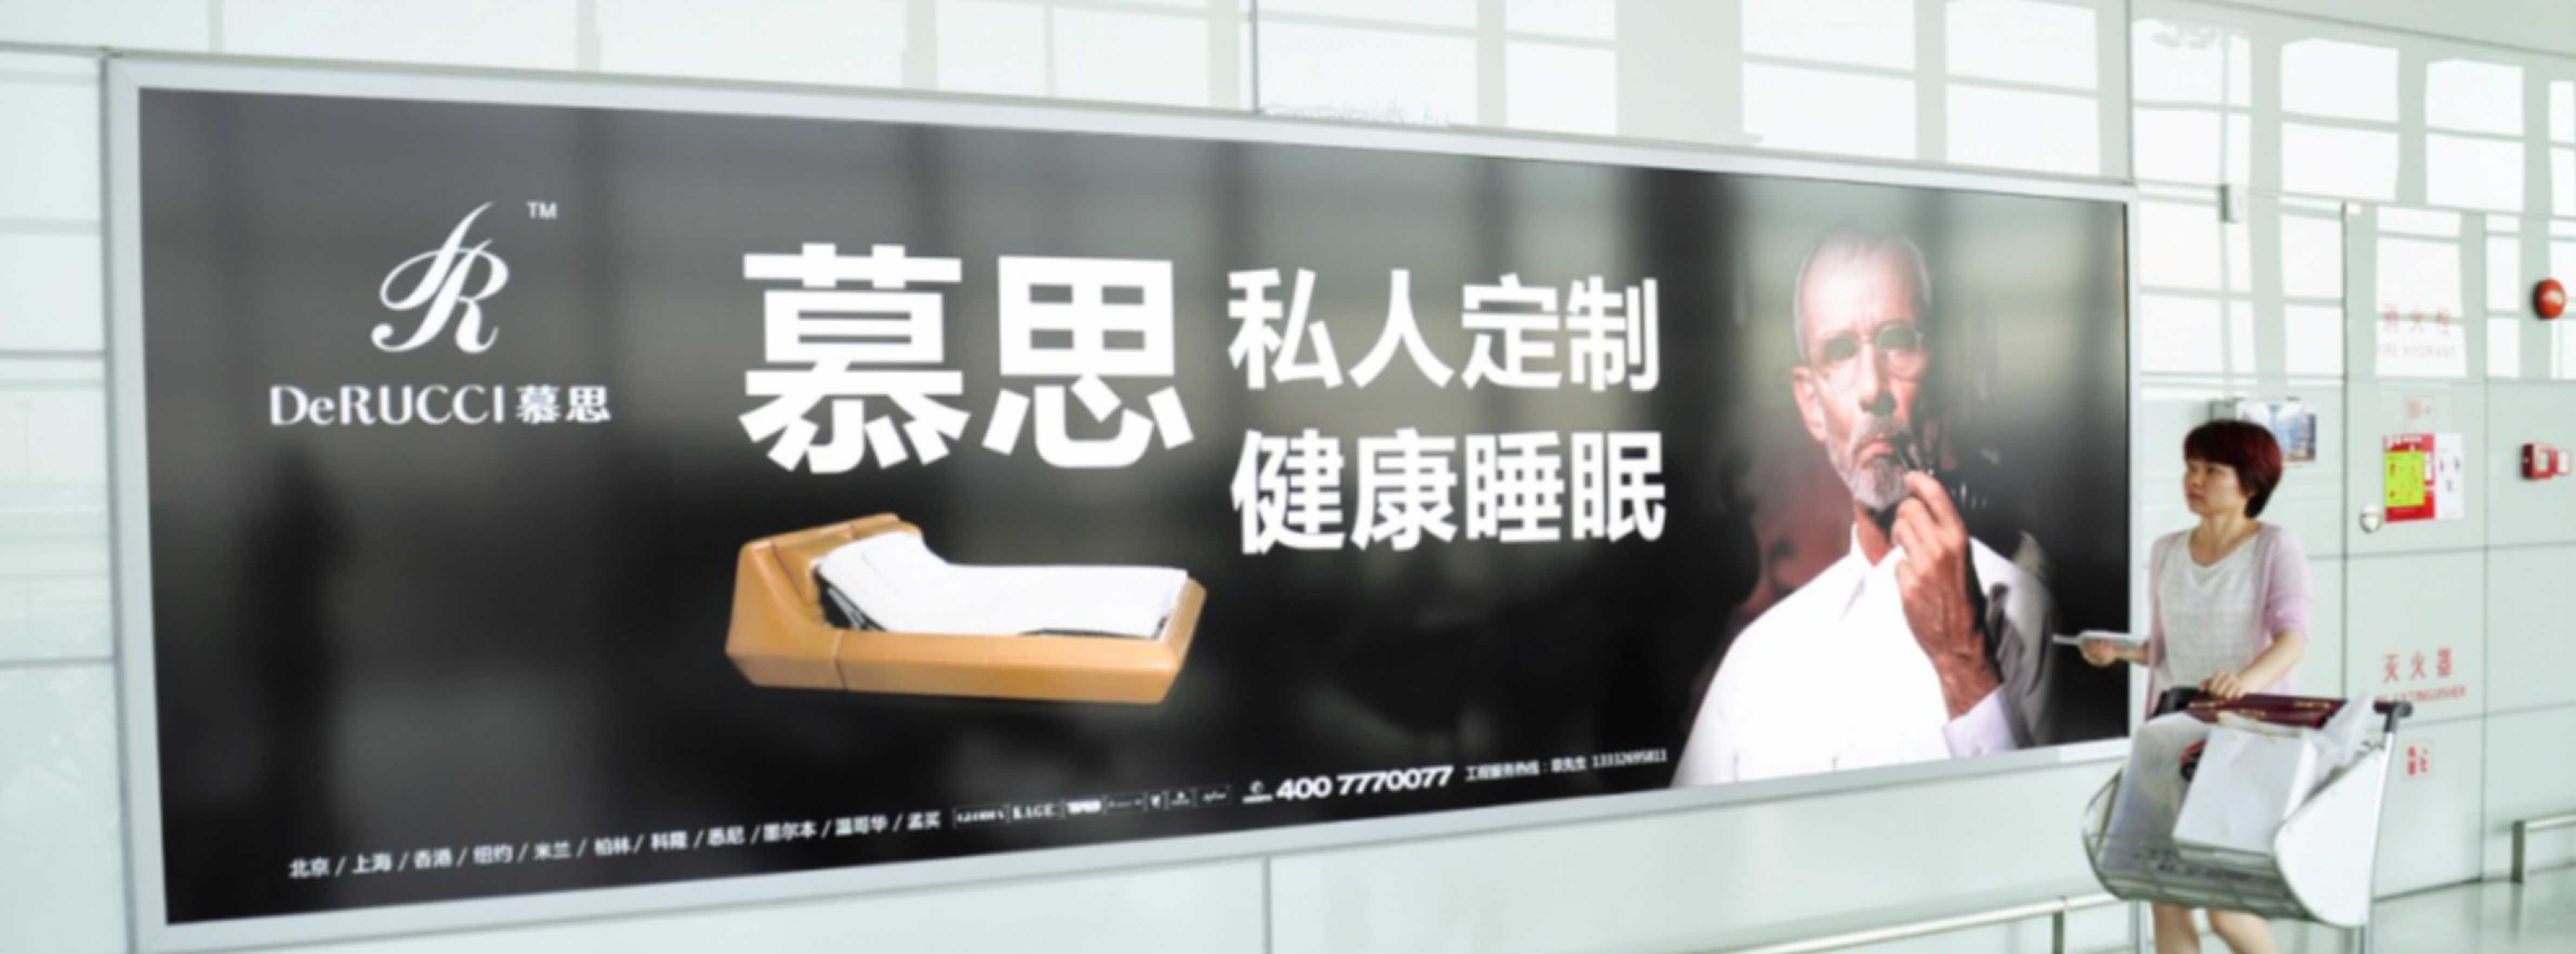 上海机场广告-虹桥T2候机大厅墙面灯箱套装